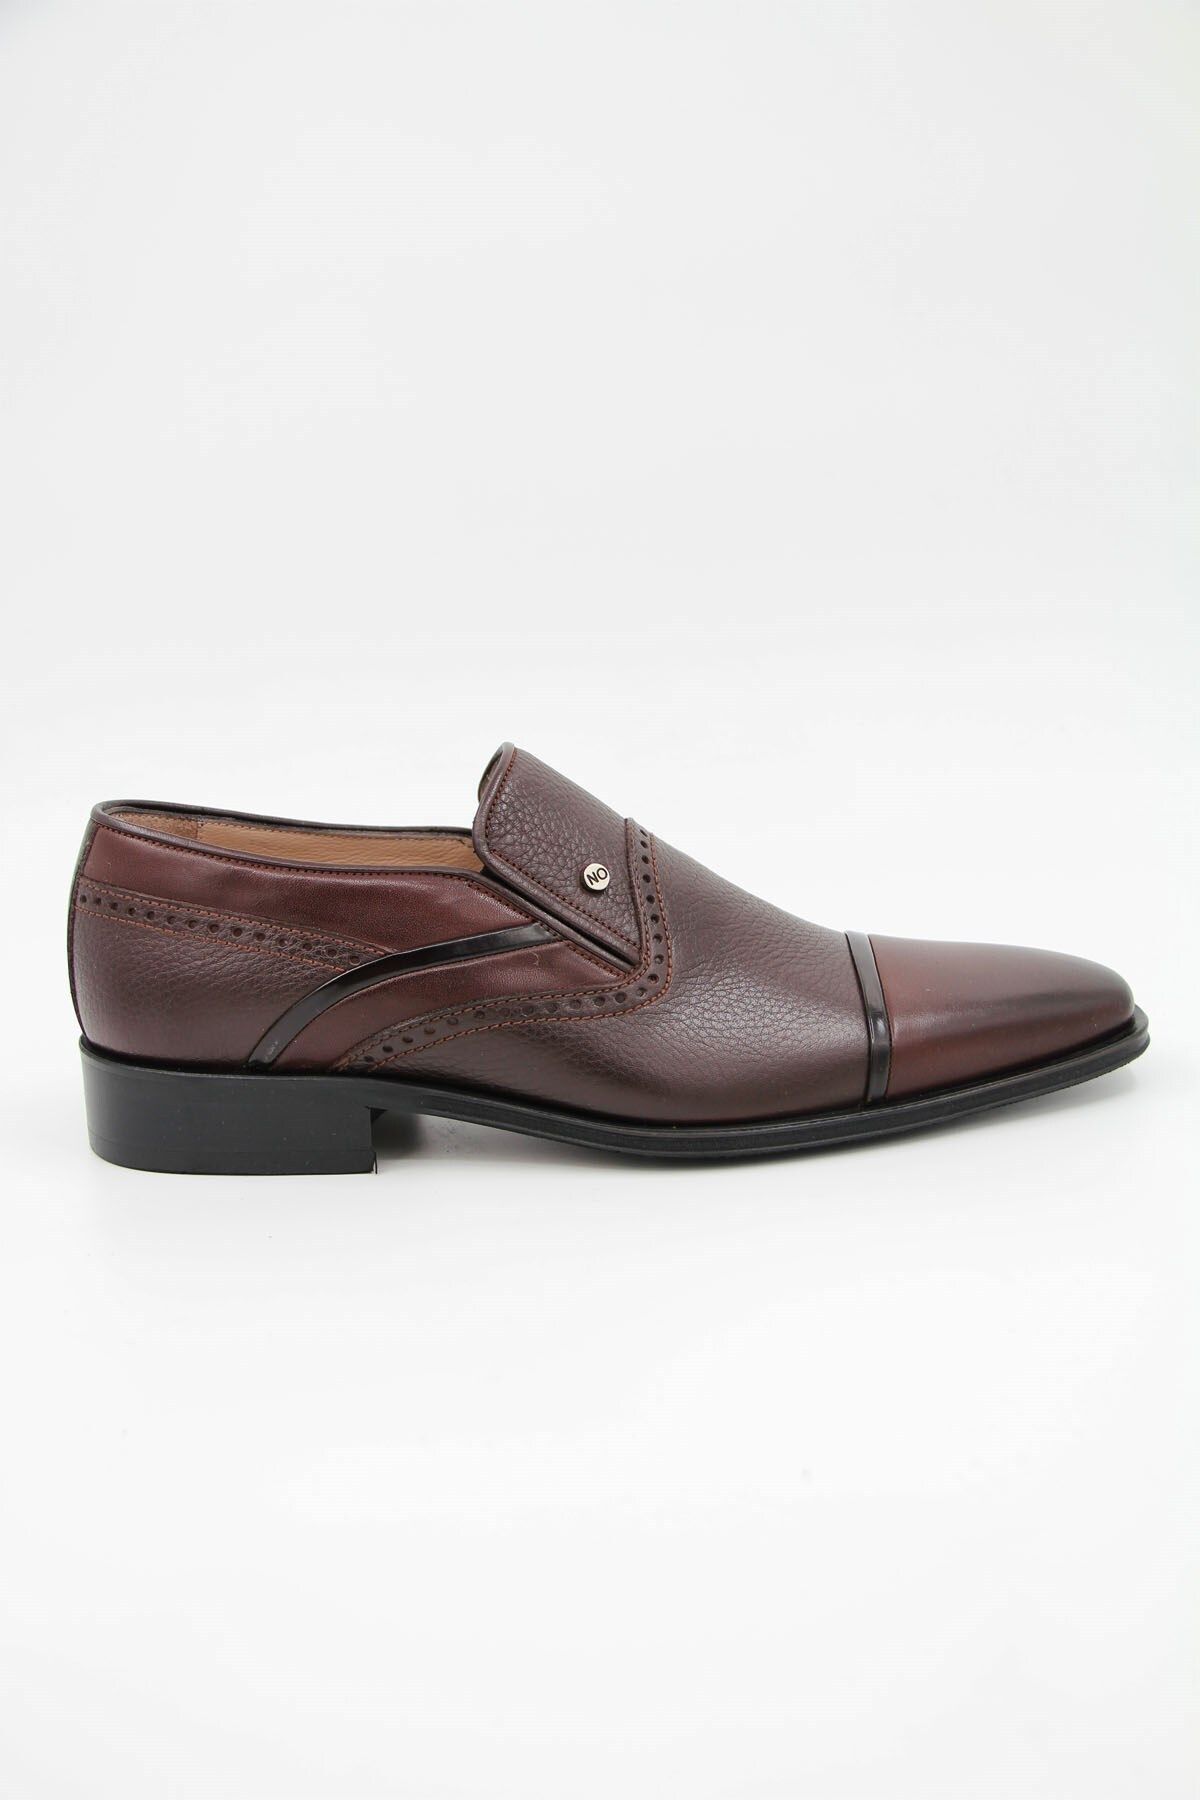 Nevzat Onay 6107-482 Erkek Klasik Ayakkabı - Kahverengi